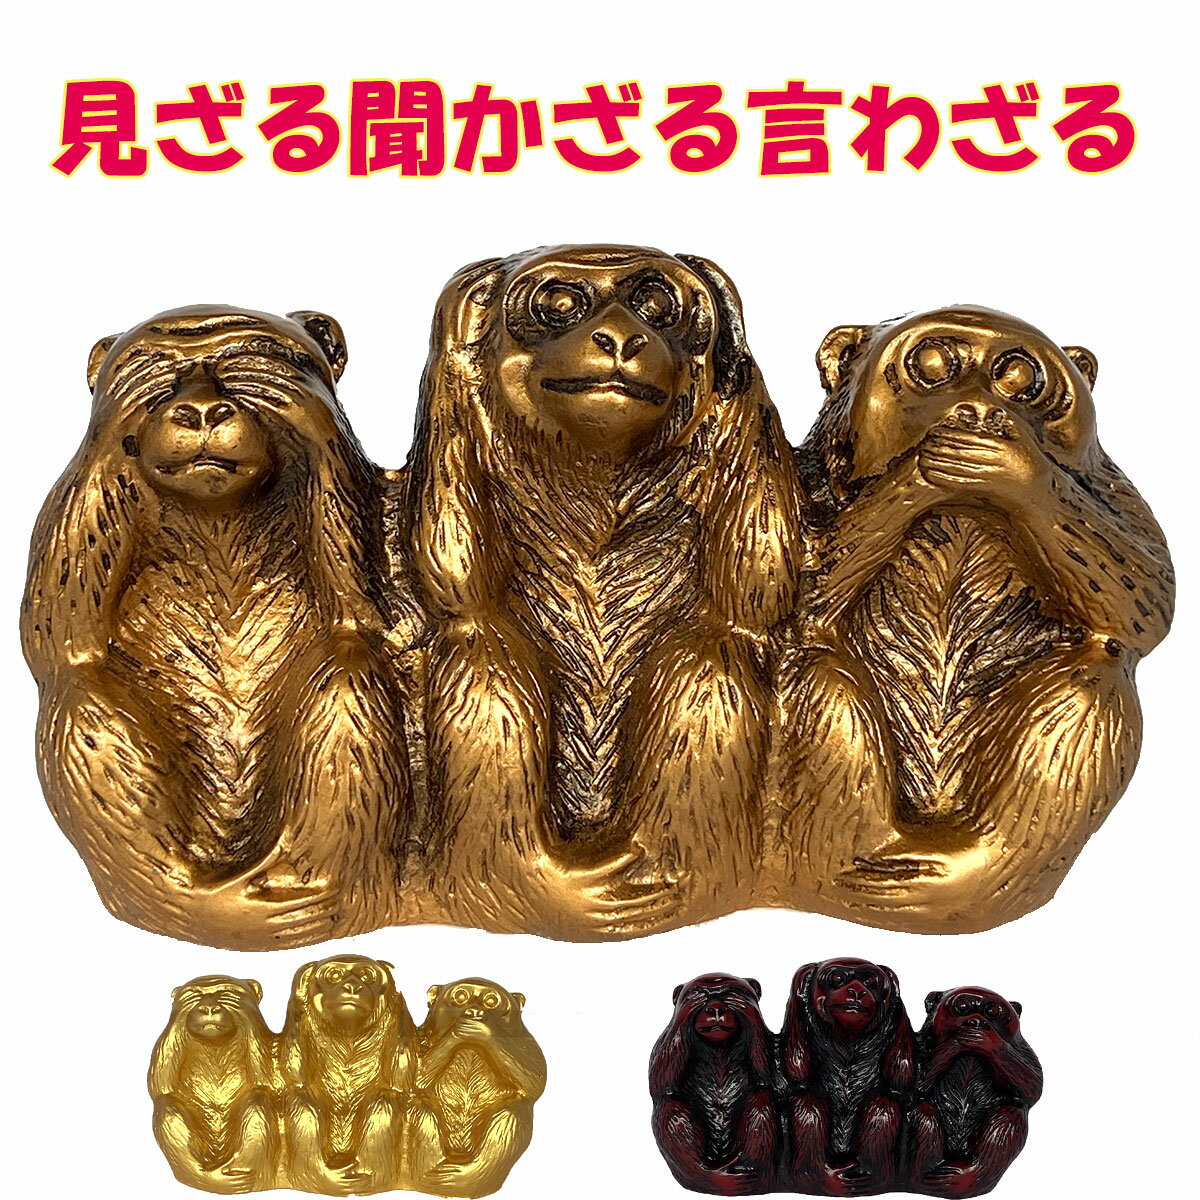 三猿 猿 置物 3匹の猿 見ざる 聞かざる 言わざる 日光 東照宮 インテリア 小さい プレゼント ゴールド 金 ブロンド 銅 レッド 赤